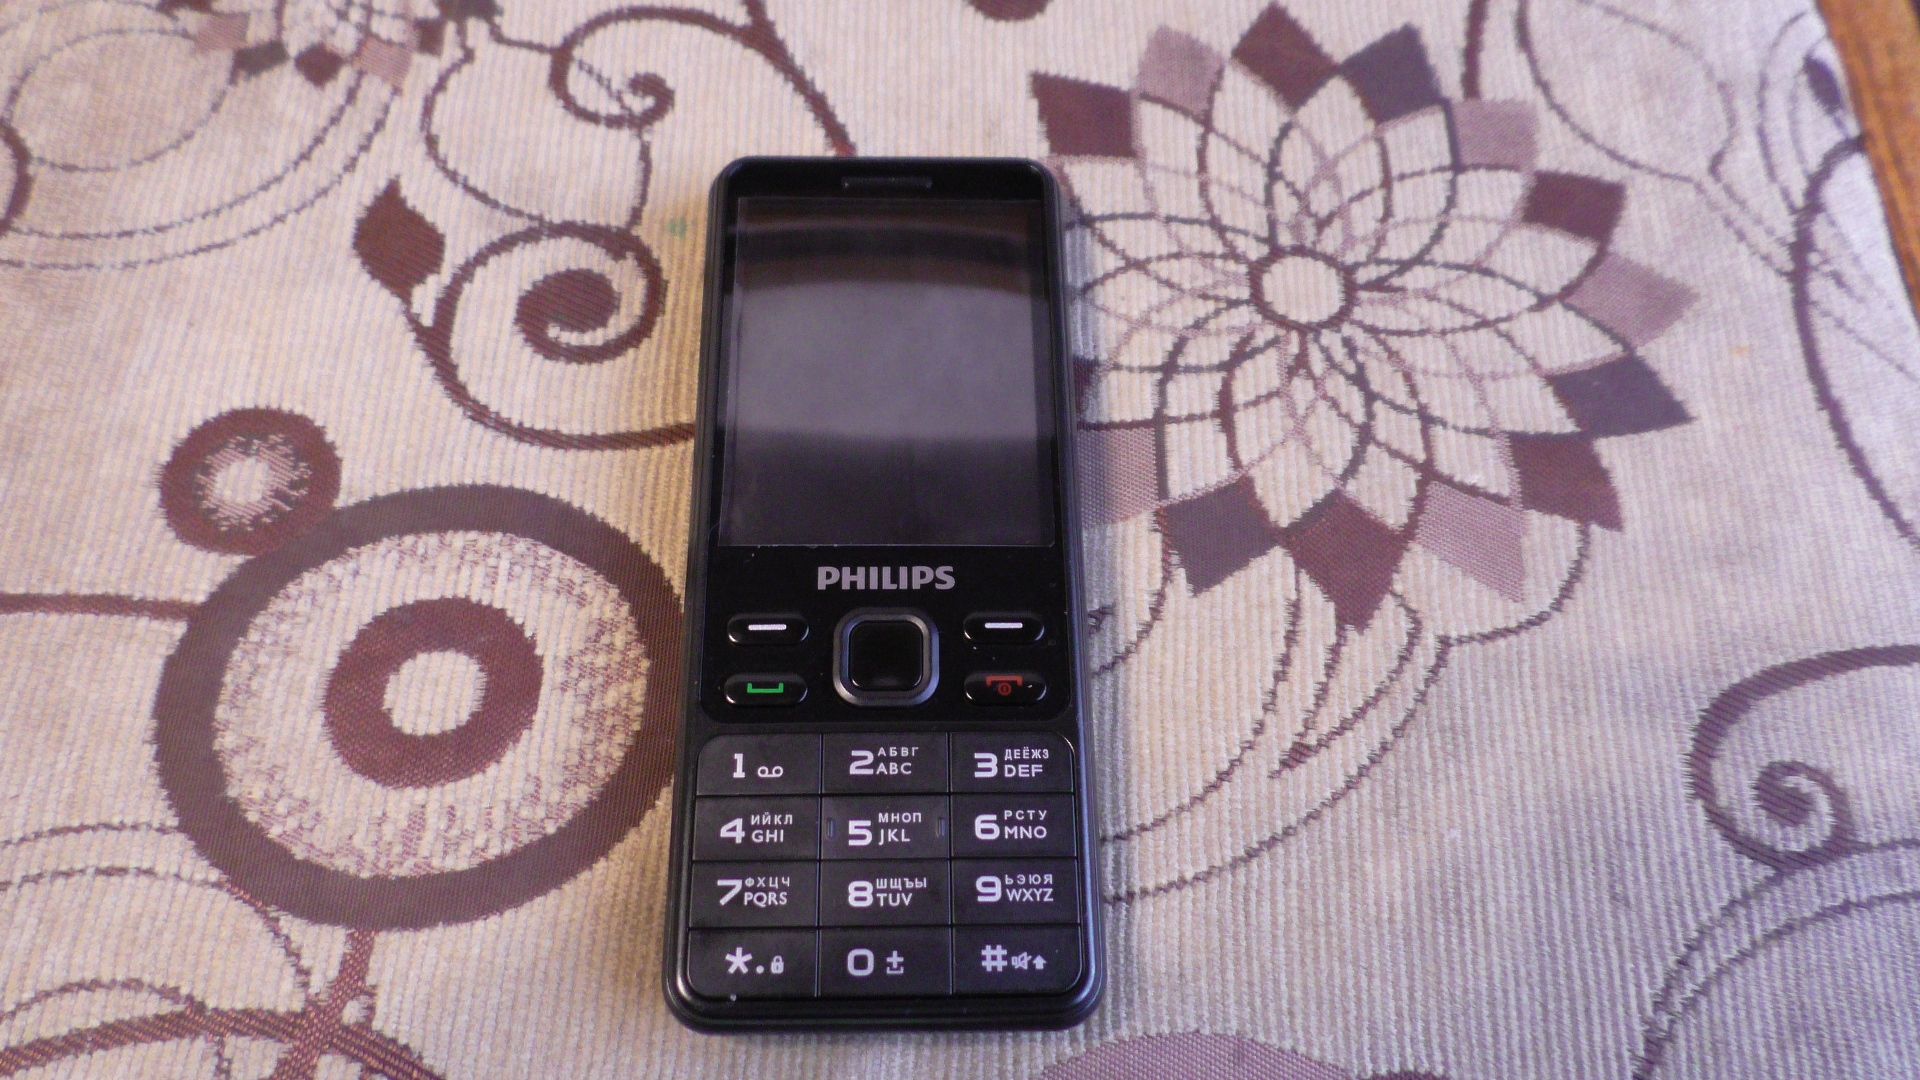 Телефоны филипс 185